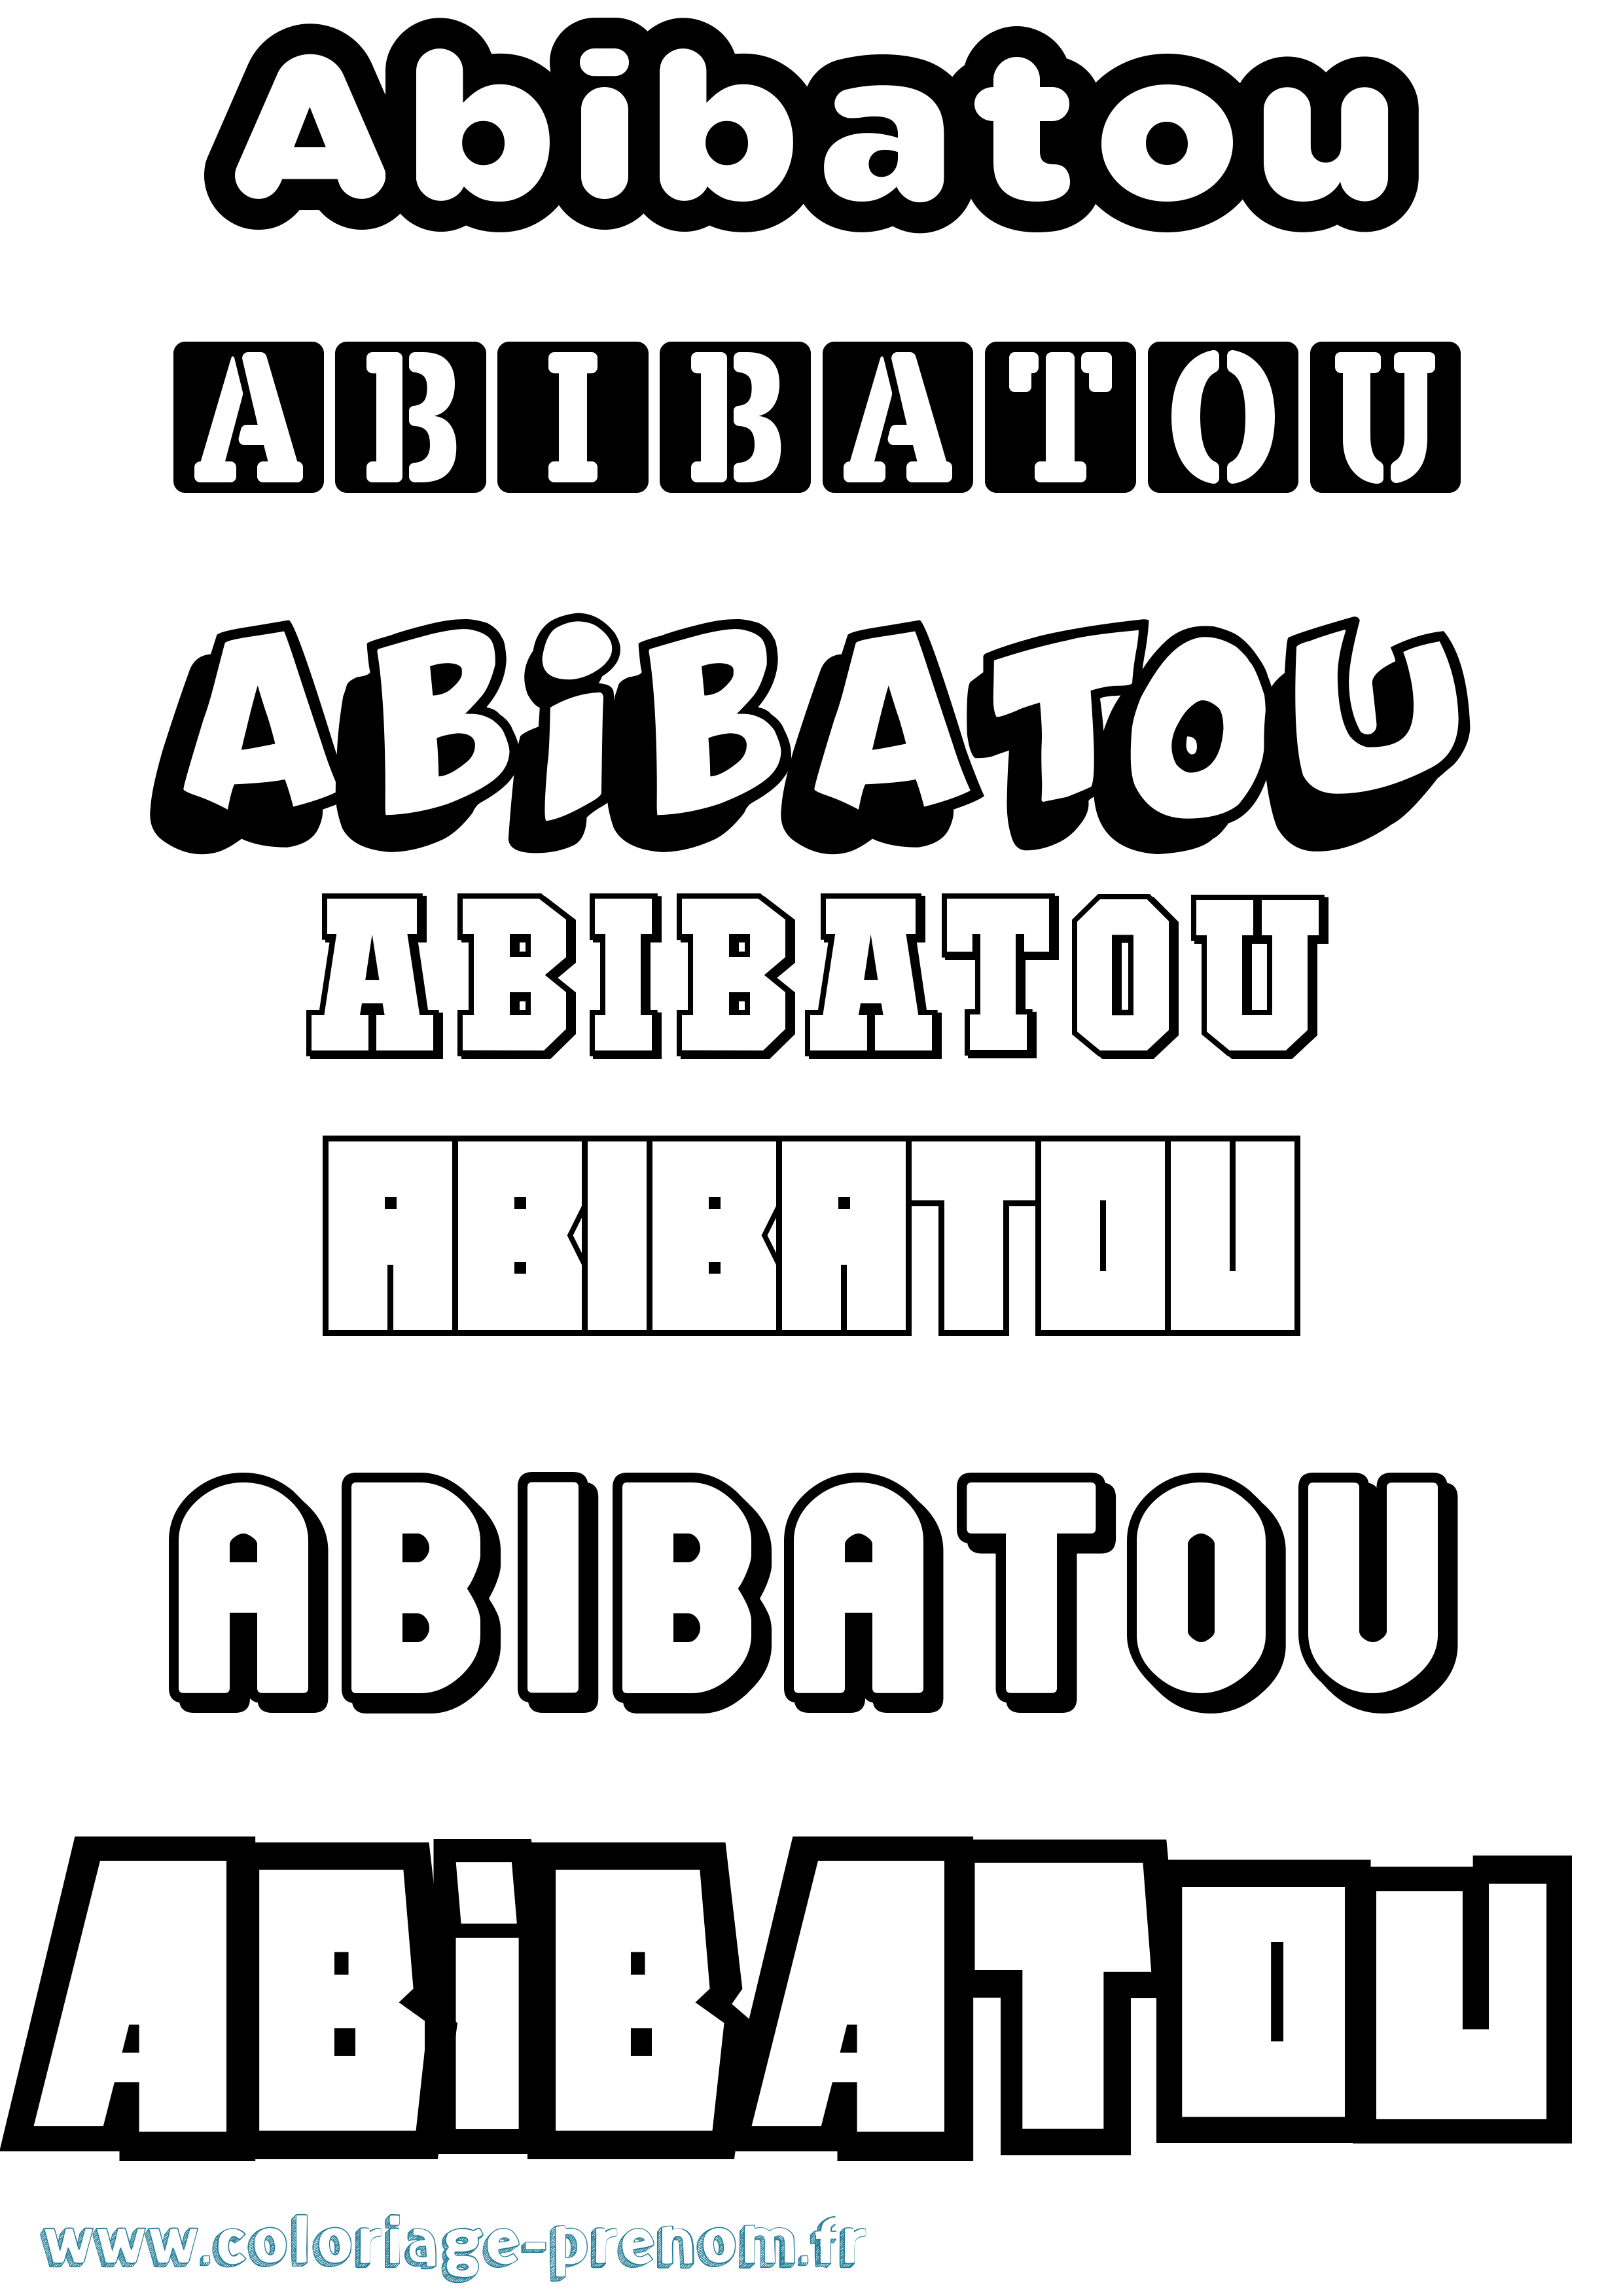 Coloriage prénom Abibatou Simple